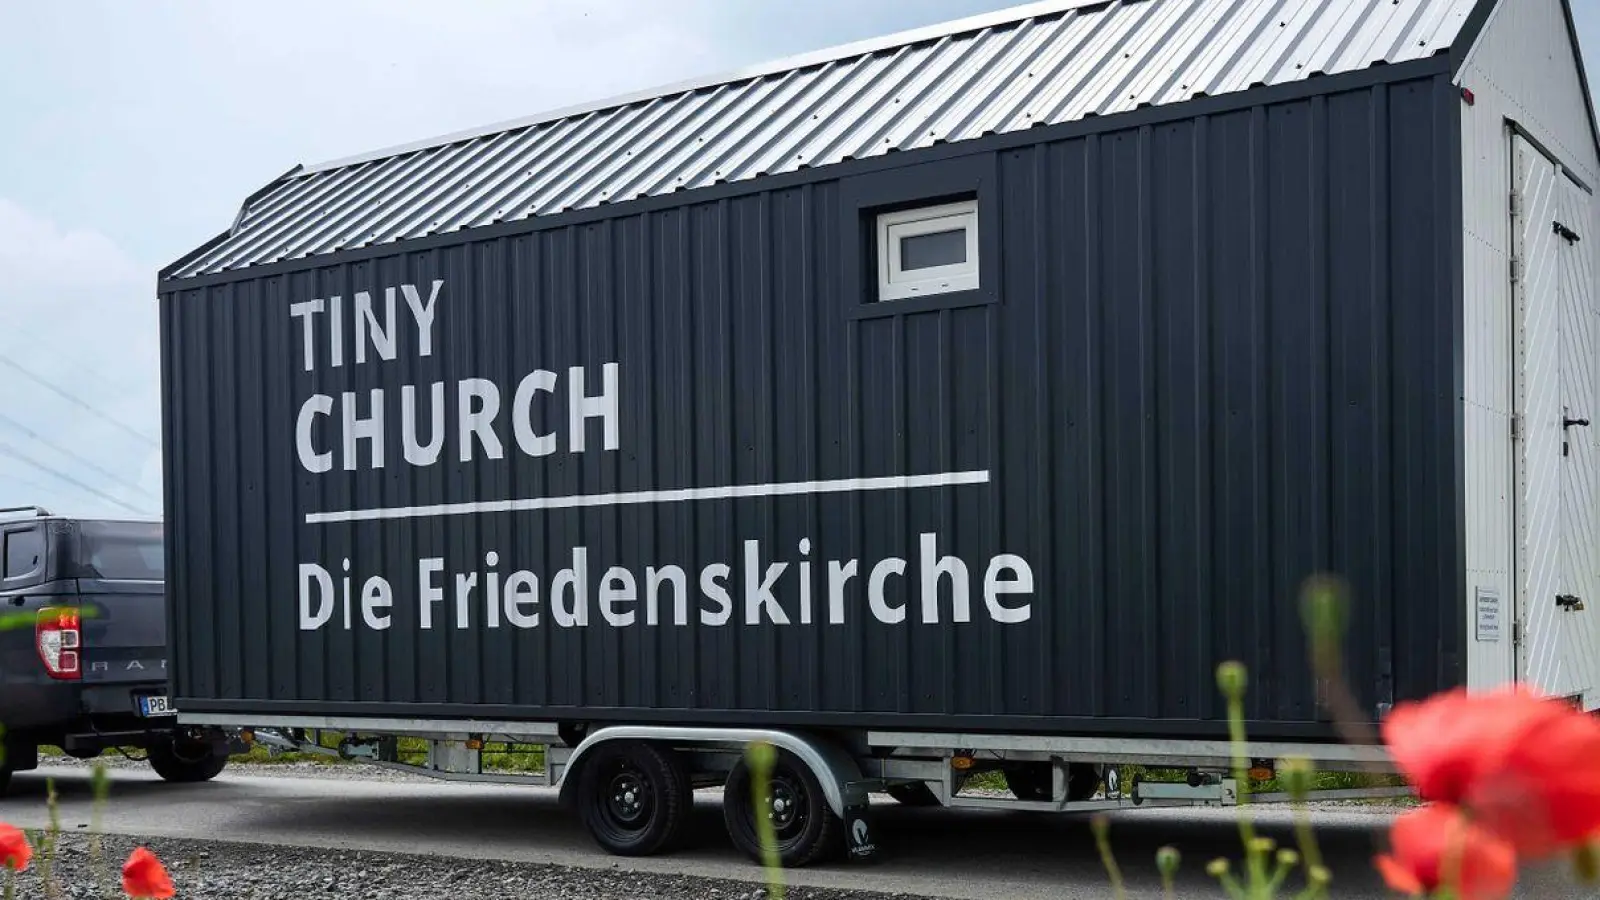 Die neue Tiny Church aus Paderborn ist buchbar. (Foto: Bernd Thissen/dpa)